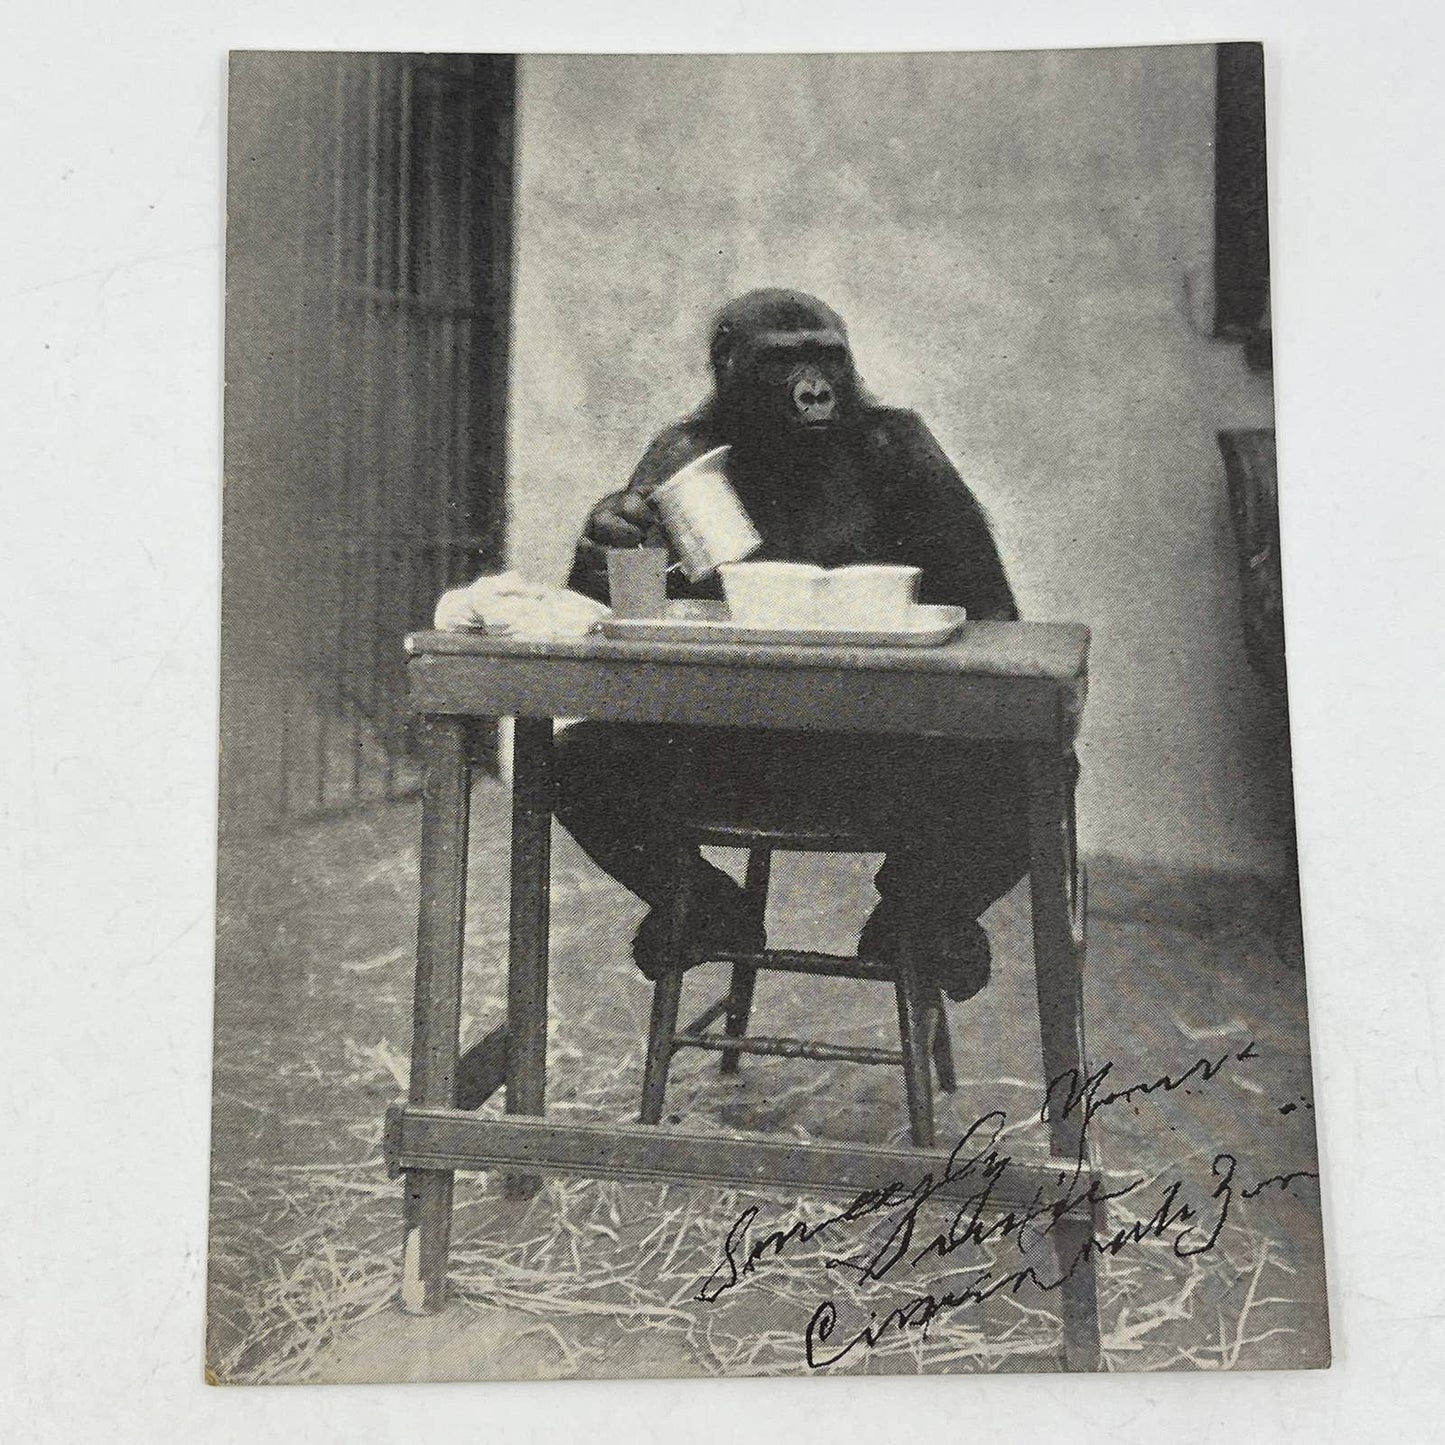 1937 Brief History of Susie Gorilla Cincinnati Zoo Book & Photo Card AC2